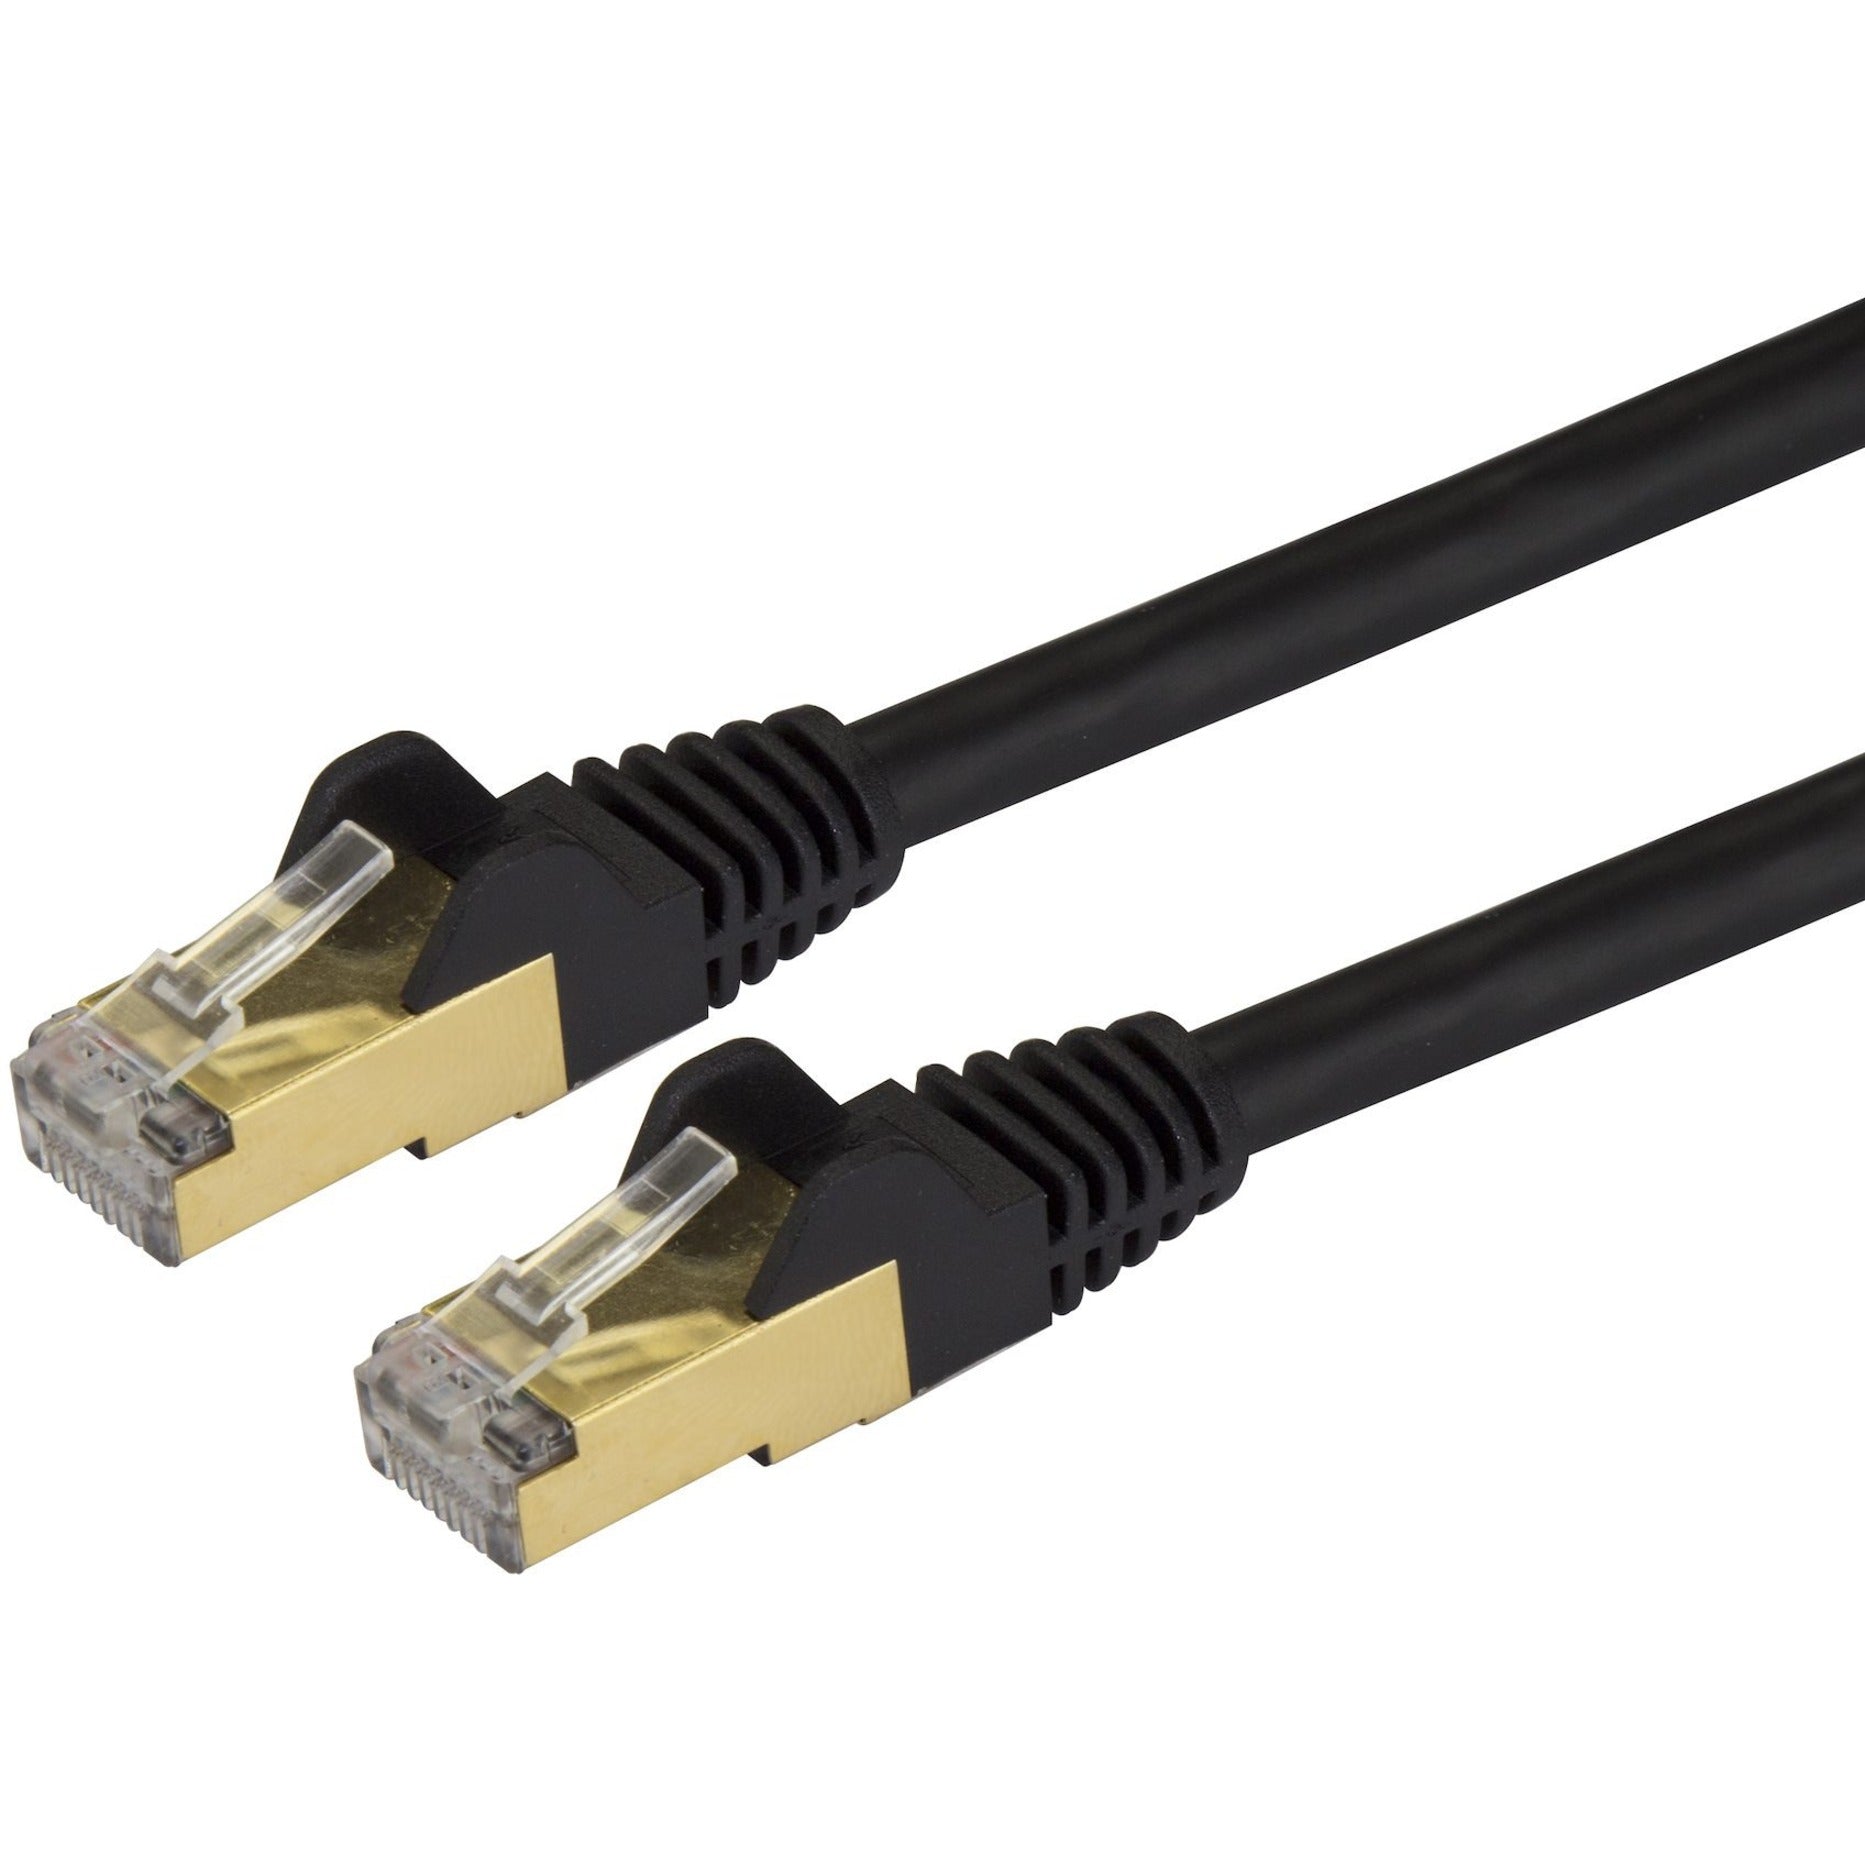 StarTech.com C6ASPAT2BK Cable de conexión Ethernet Cat6a - Blindado (STP) - 2 ft. Negro Cable Ethernet RJ45 sin enganches